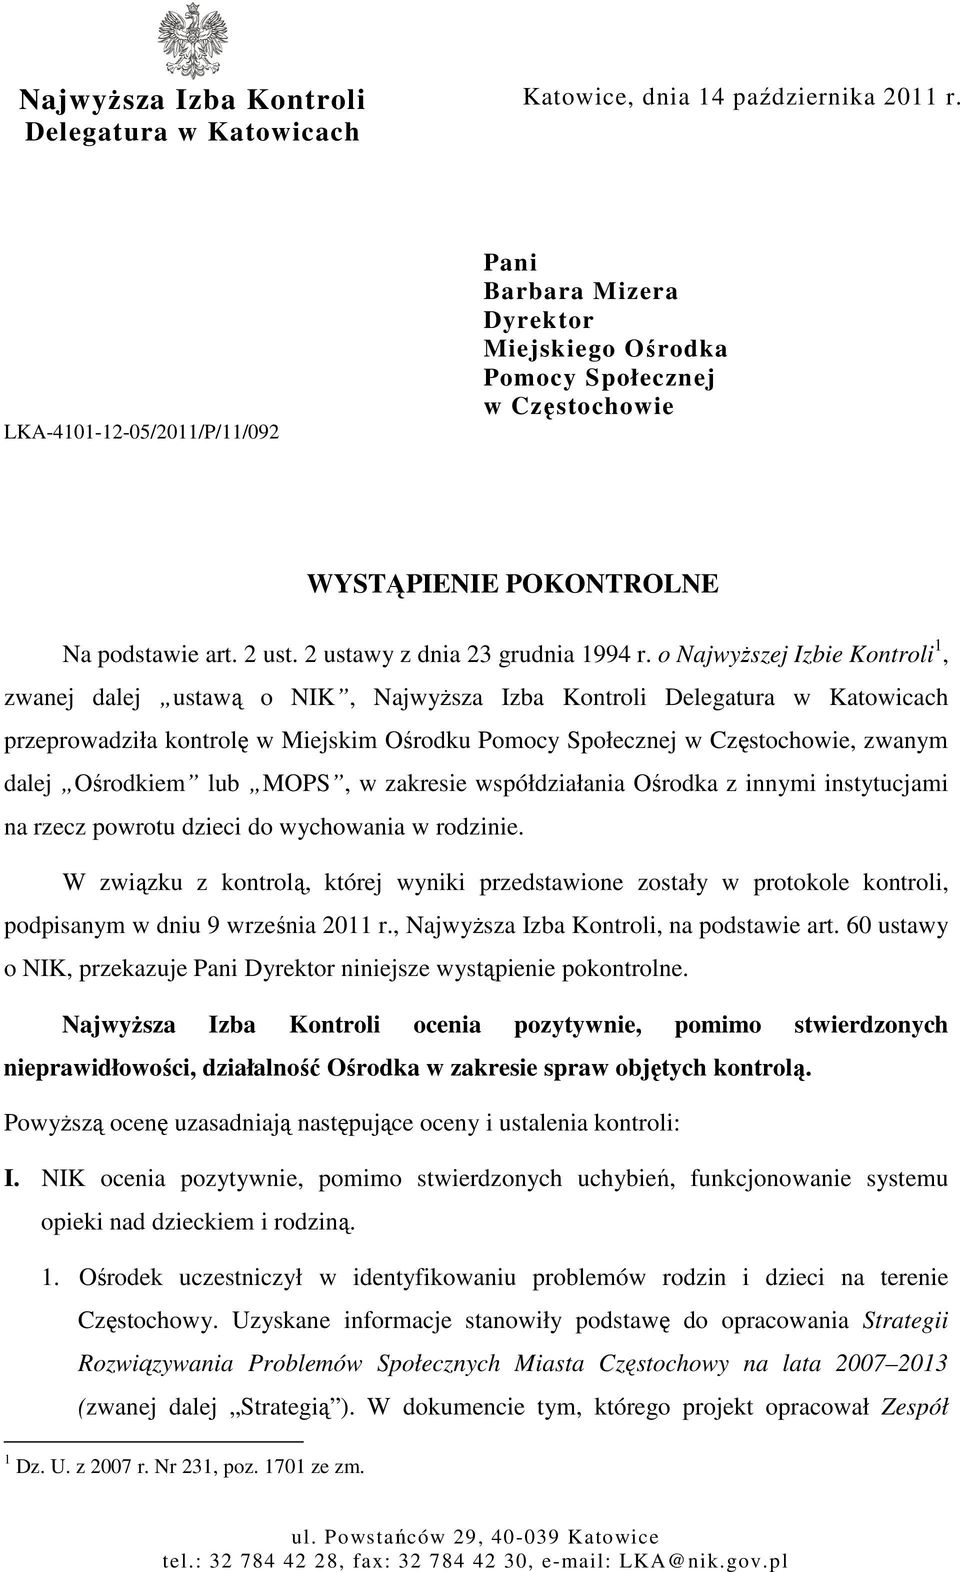 o NajwyŜszej Izbie Kontroli 1, zwanej dalej ustawą o NIK, NajwyŜsza Izba Kontroli Delegatura w Katowicach przeprowadziła kontrolę w Miejskim Ośrodku Pomocy Społecznej w Częstochowie, zwanym dalej